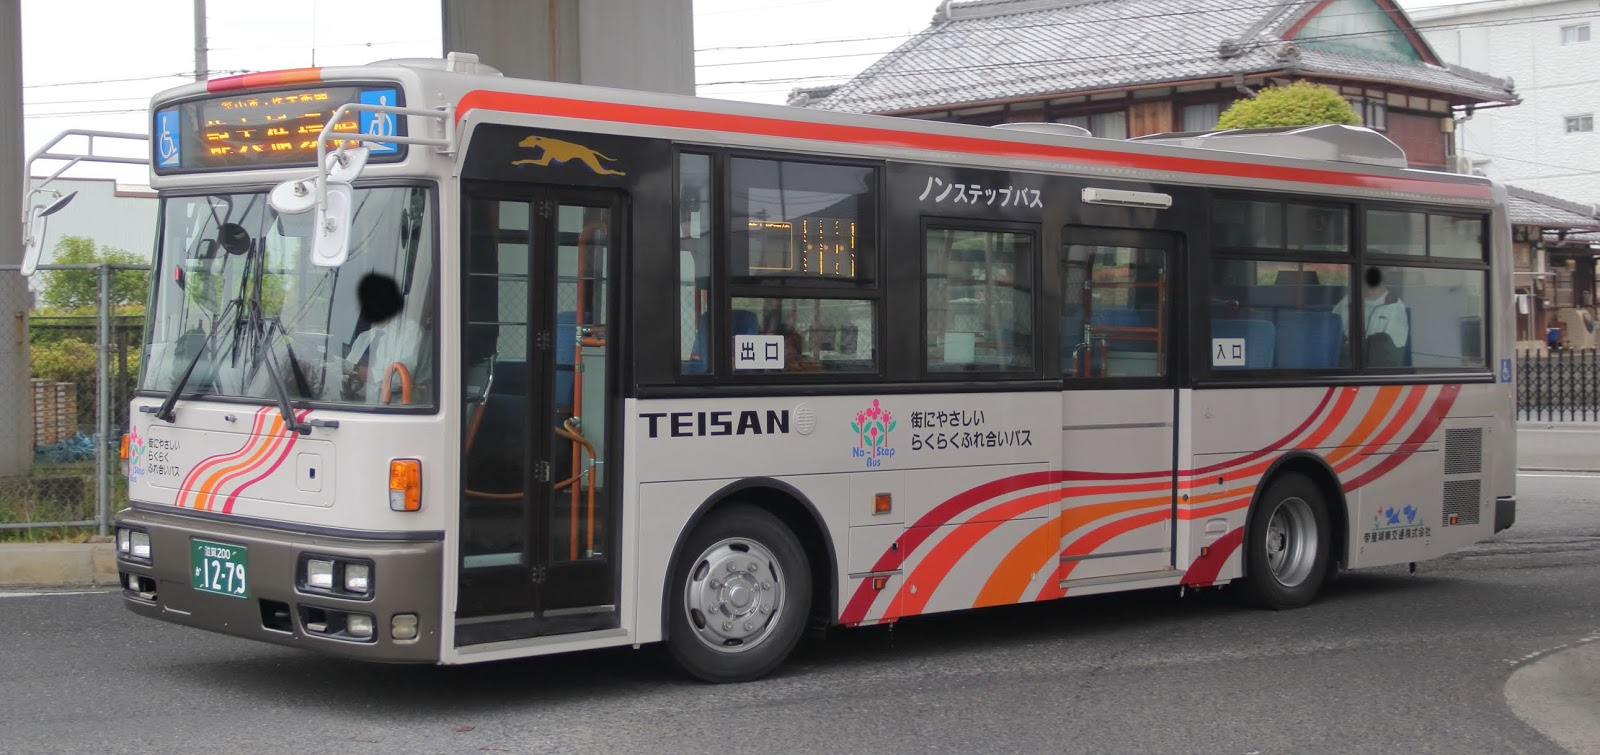 広島のバス 帝産湖南交通 滋賀0か1279